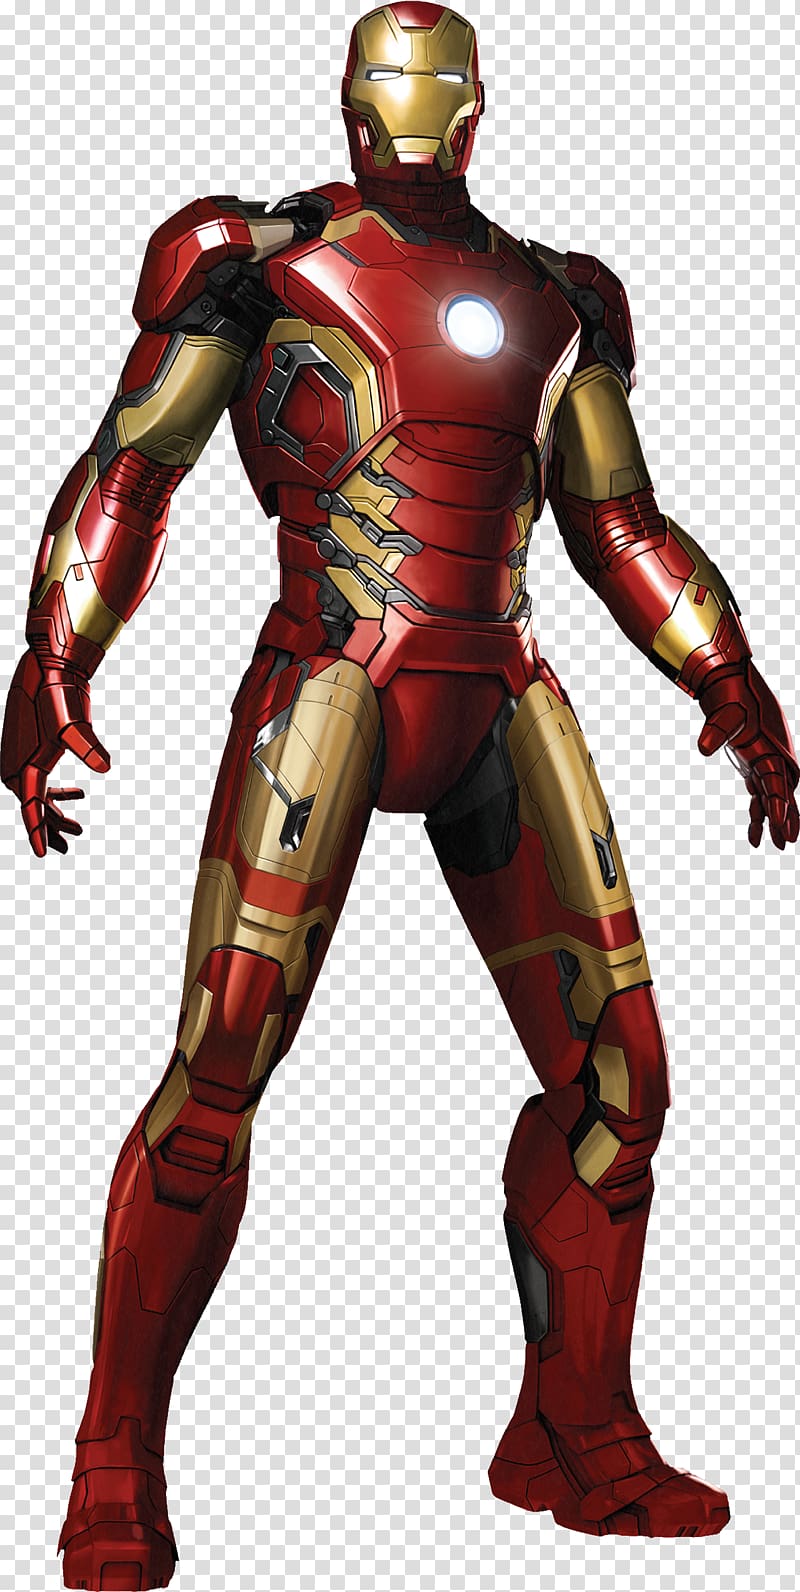 Iron Man\'s armor Hulk Ultron, ultron transparent background PNG clipart